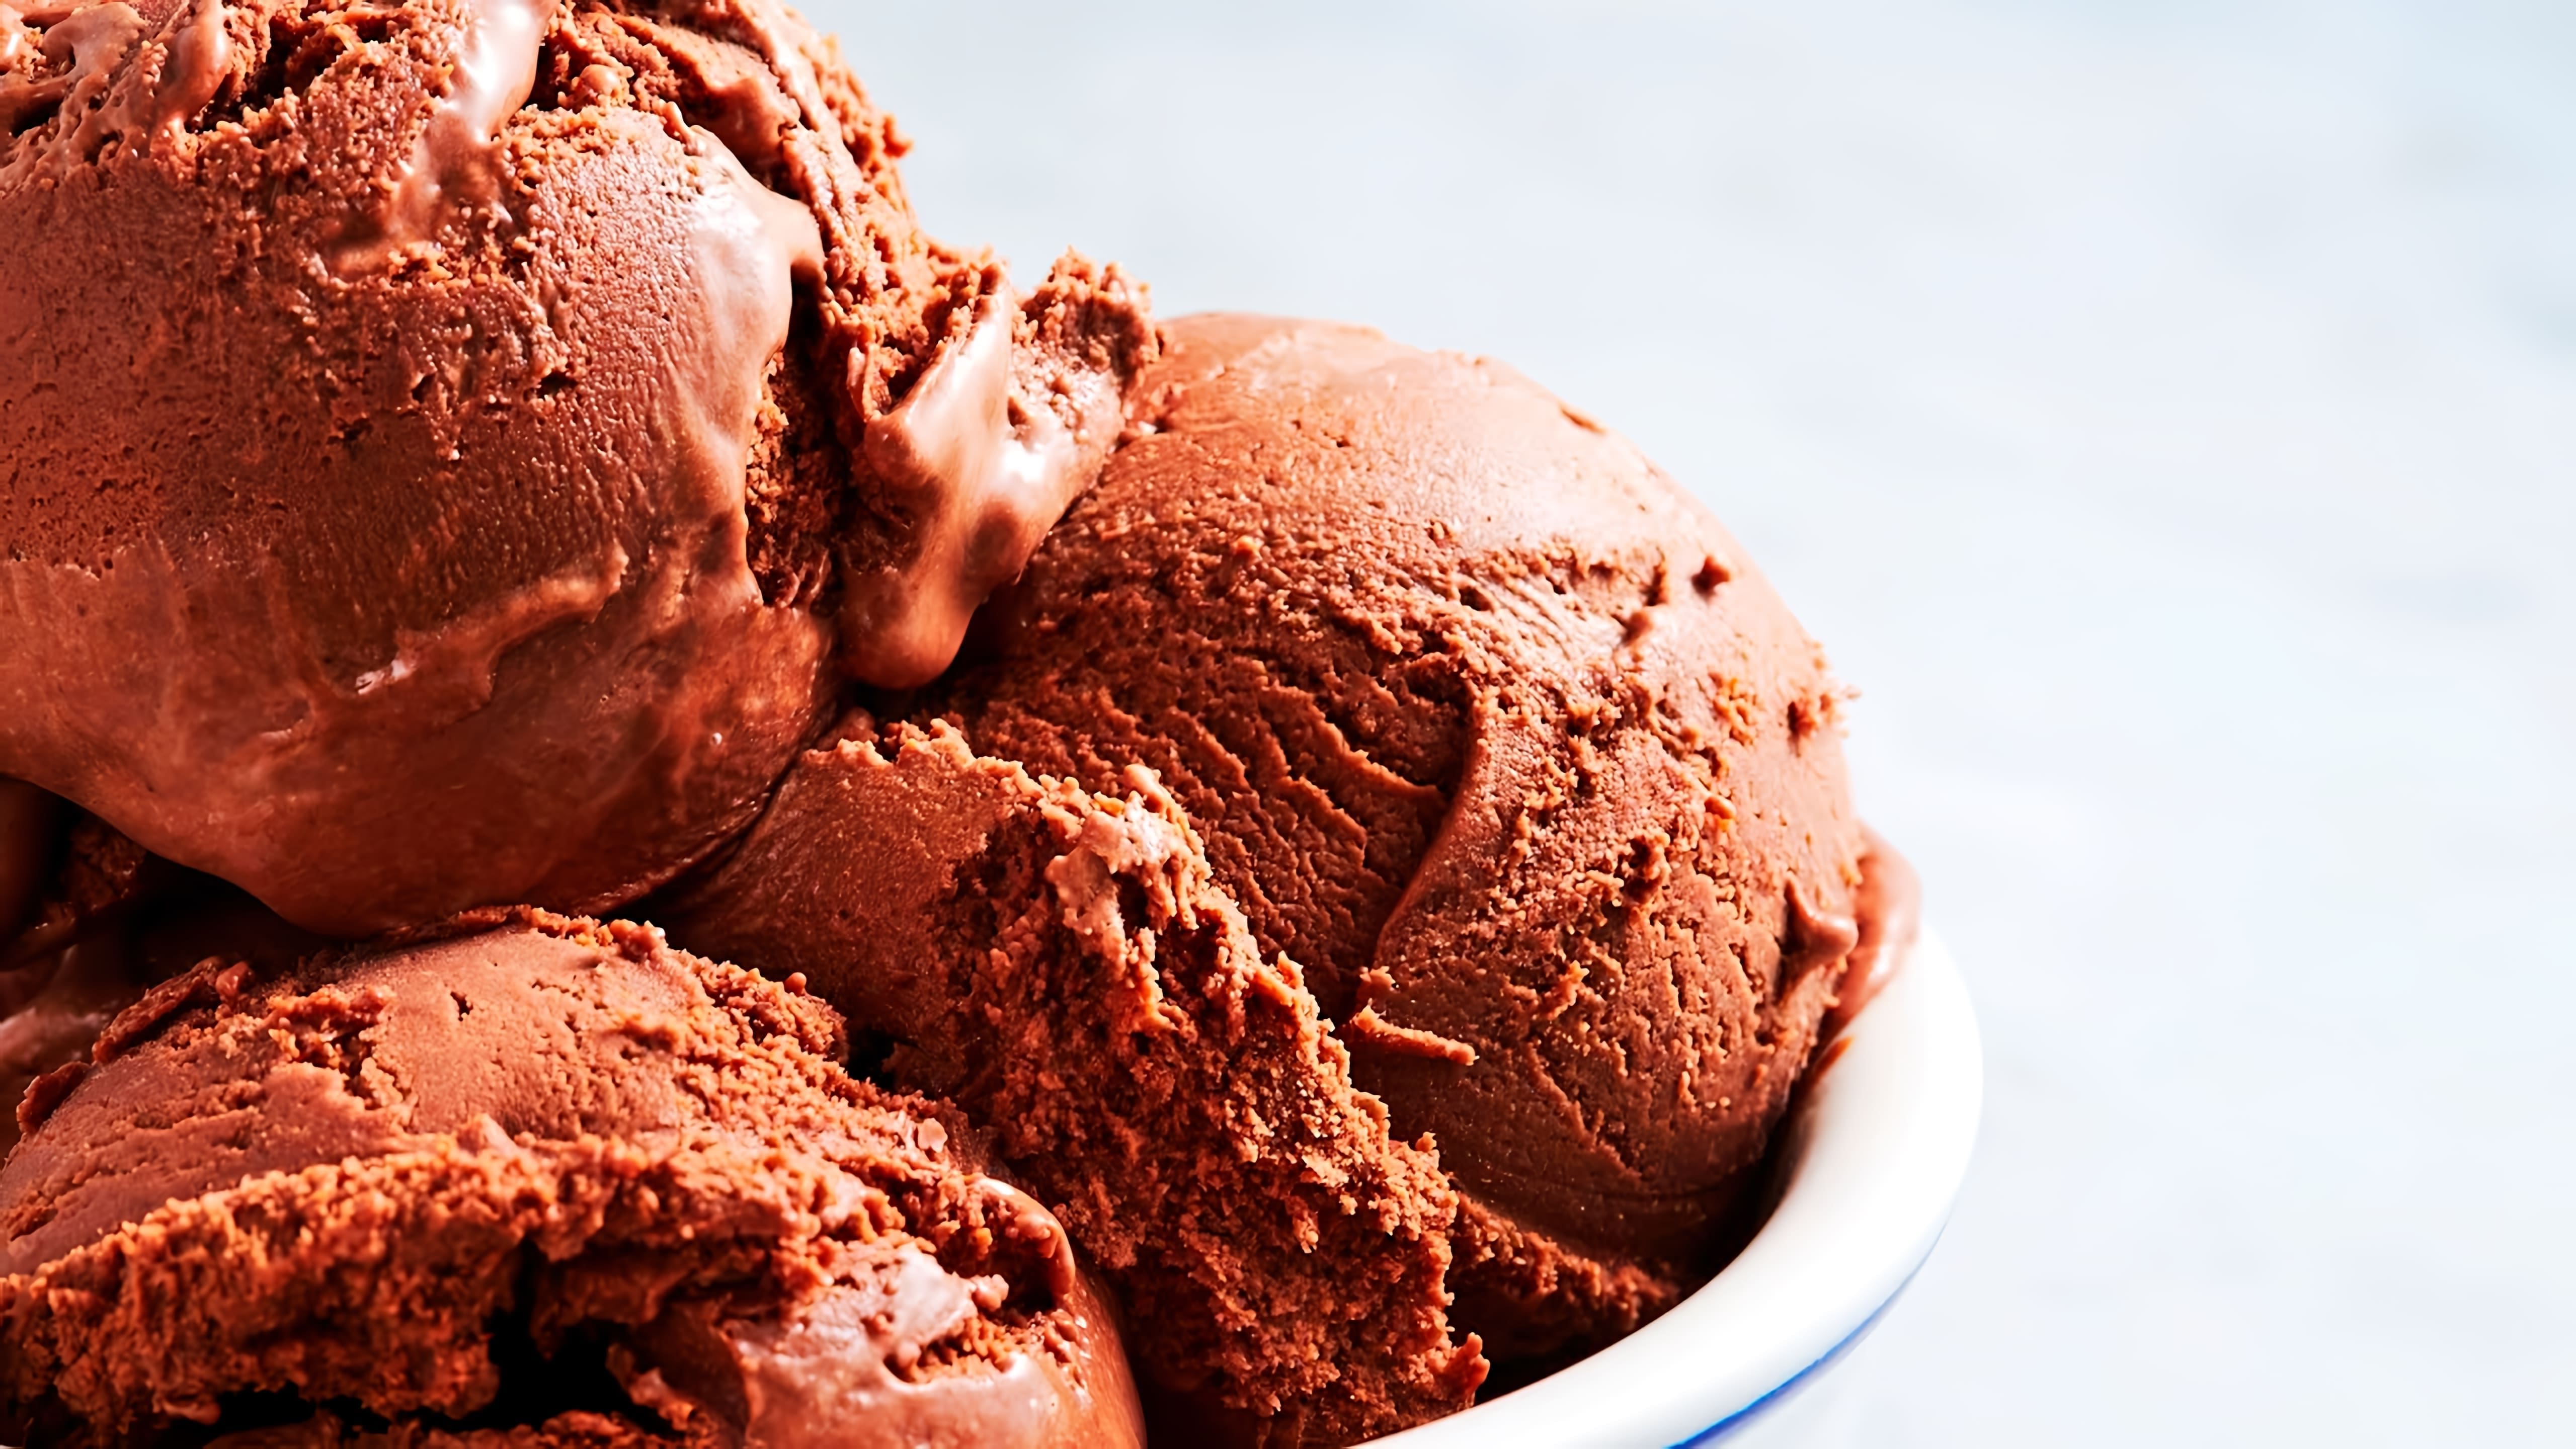 В этом видео демонстрируется процесс приготовления шоколадного мороженого в домашних условиях